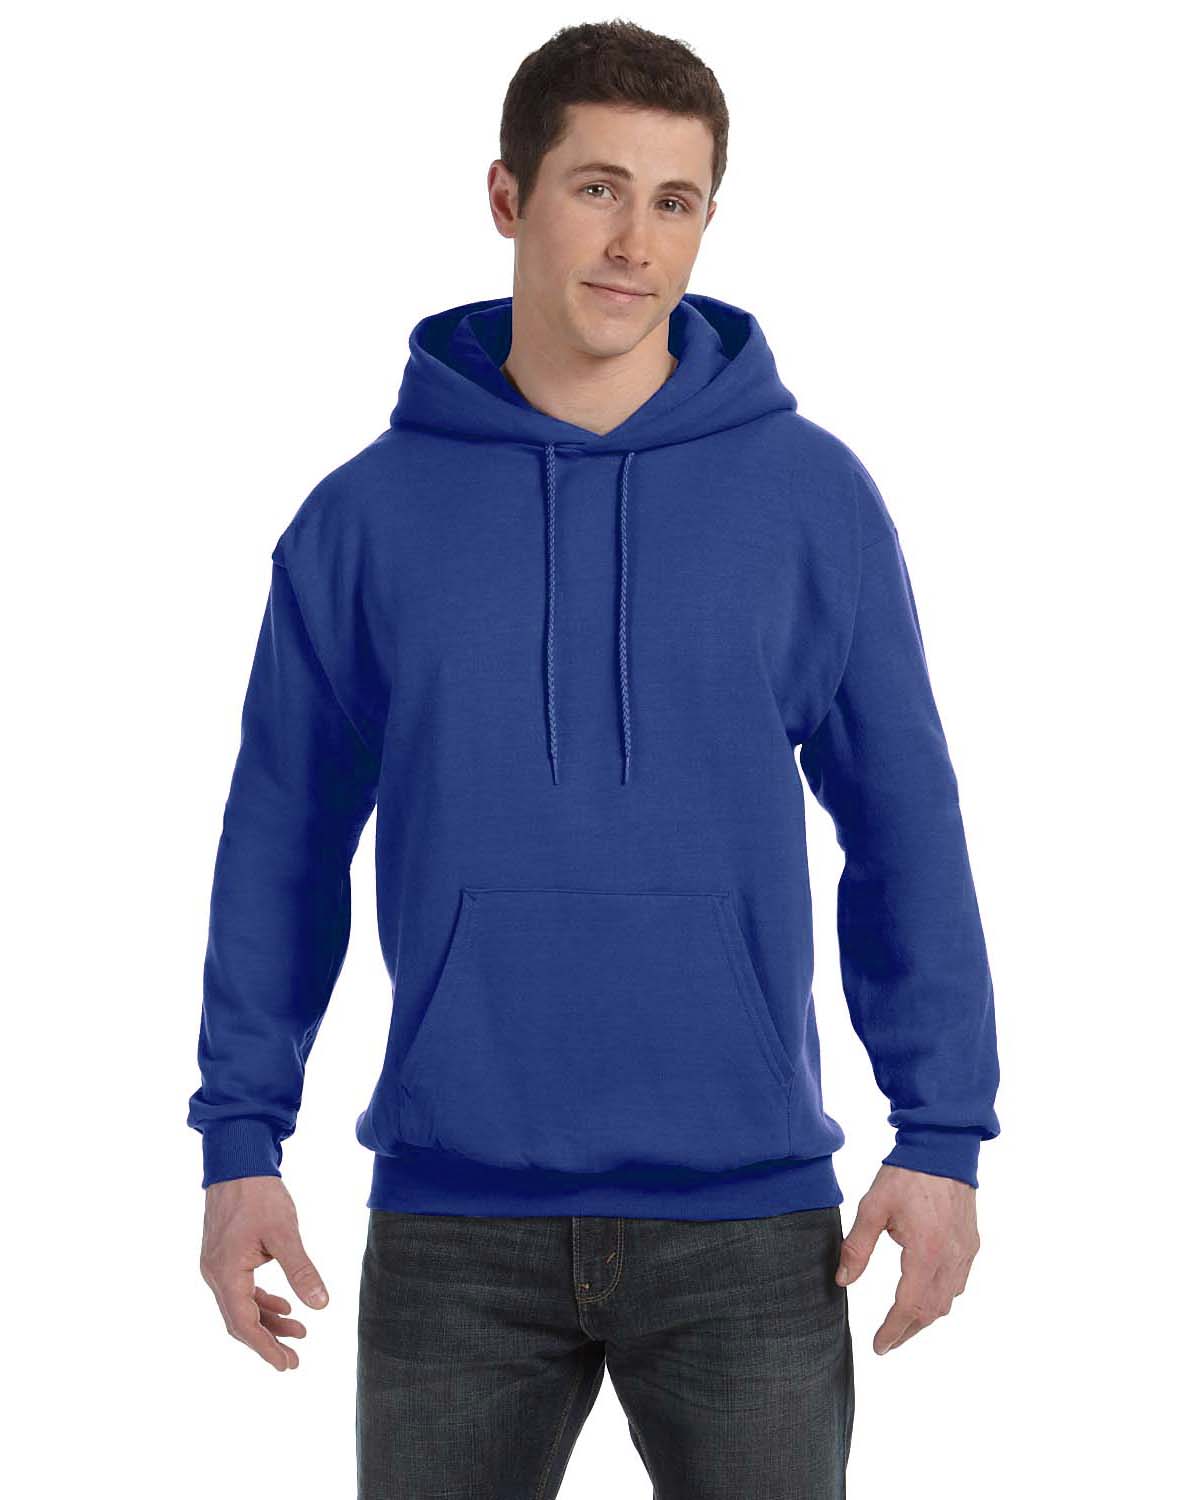 NEW Hanes ComfortBlend EcoSmart 50/50 Pullover Hoodie S-XL Sweatshirt R ...